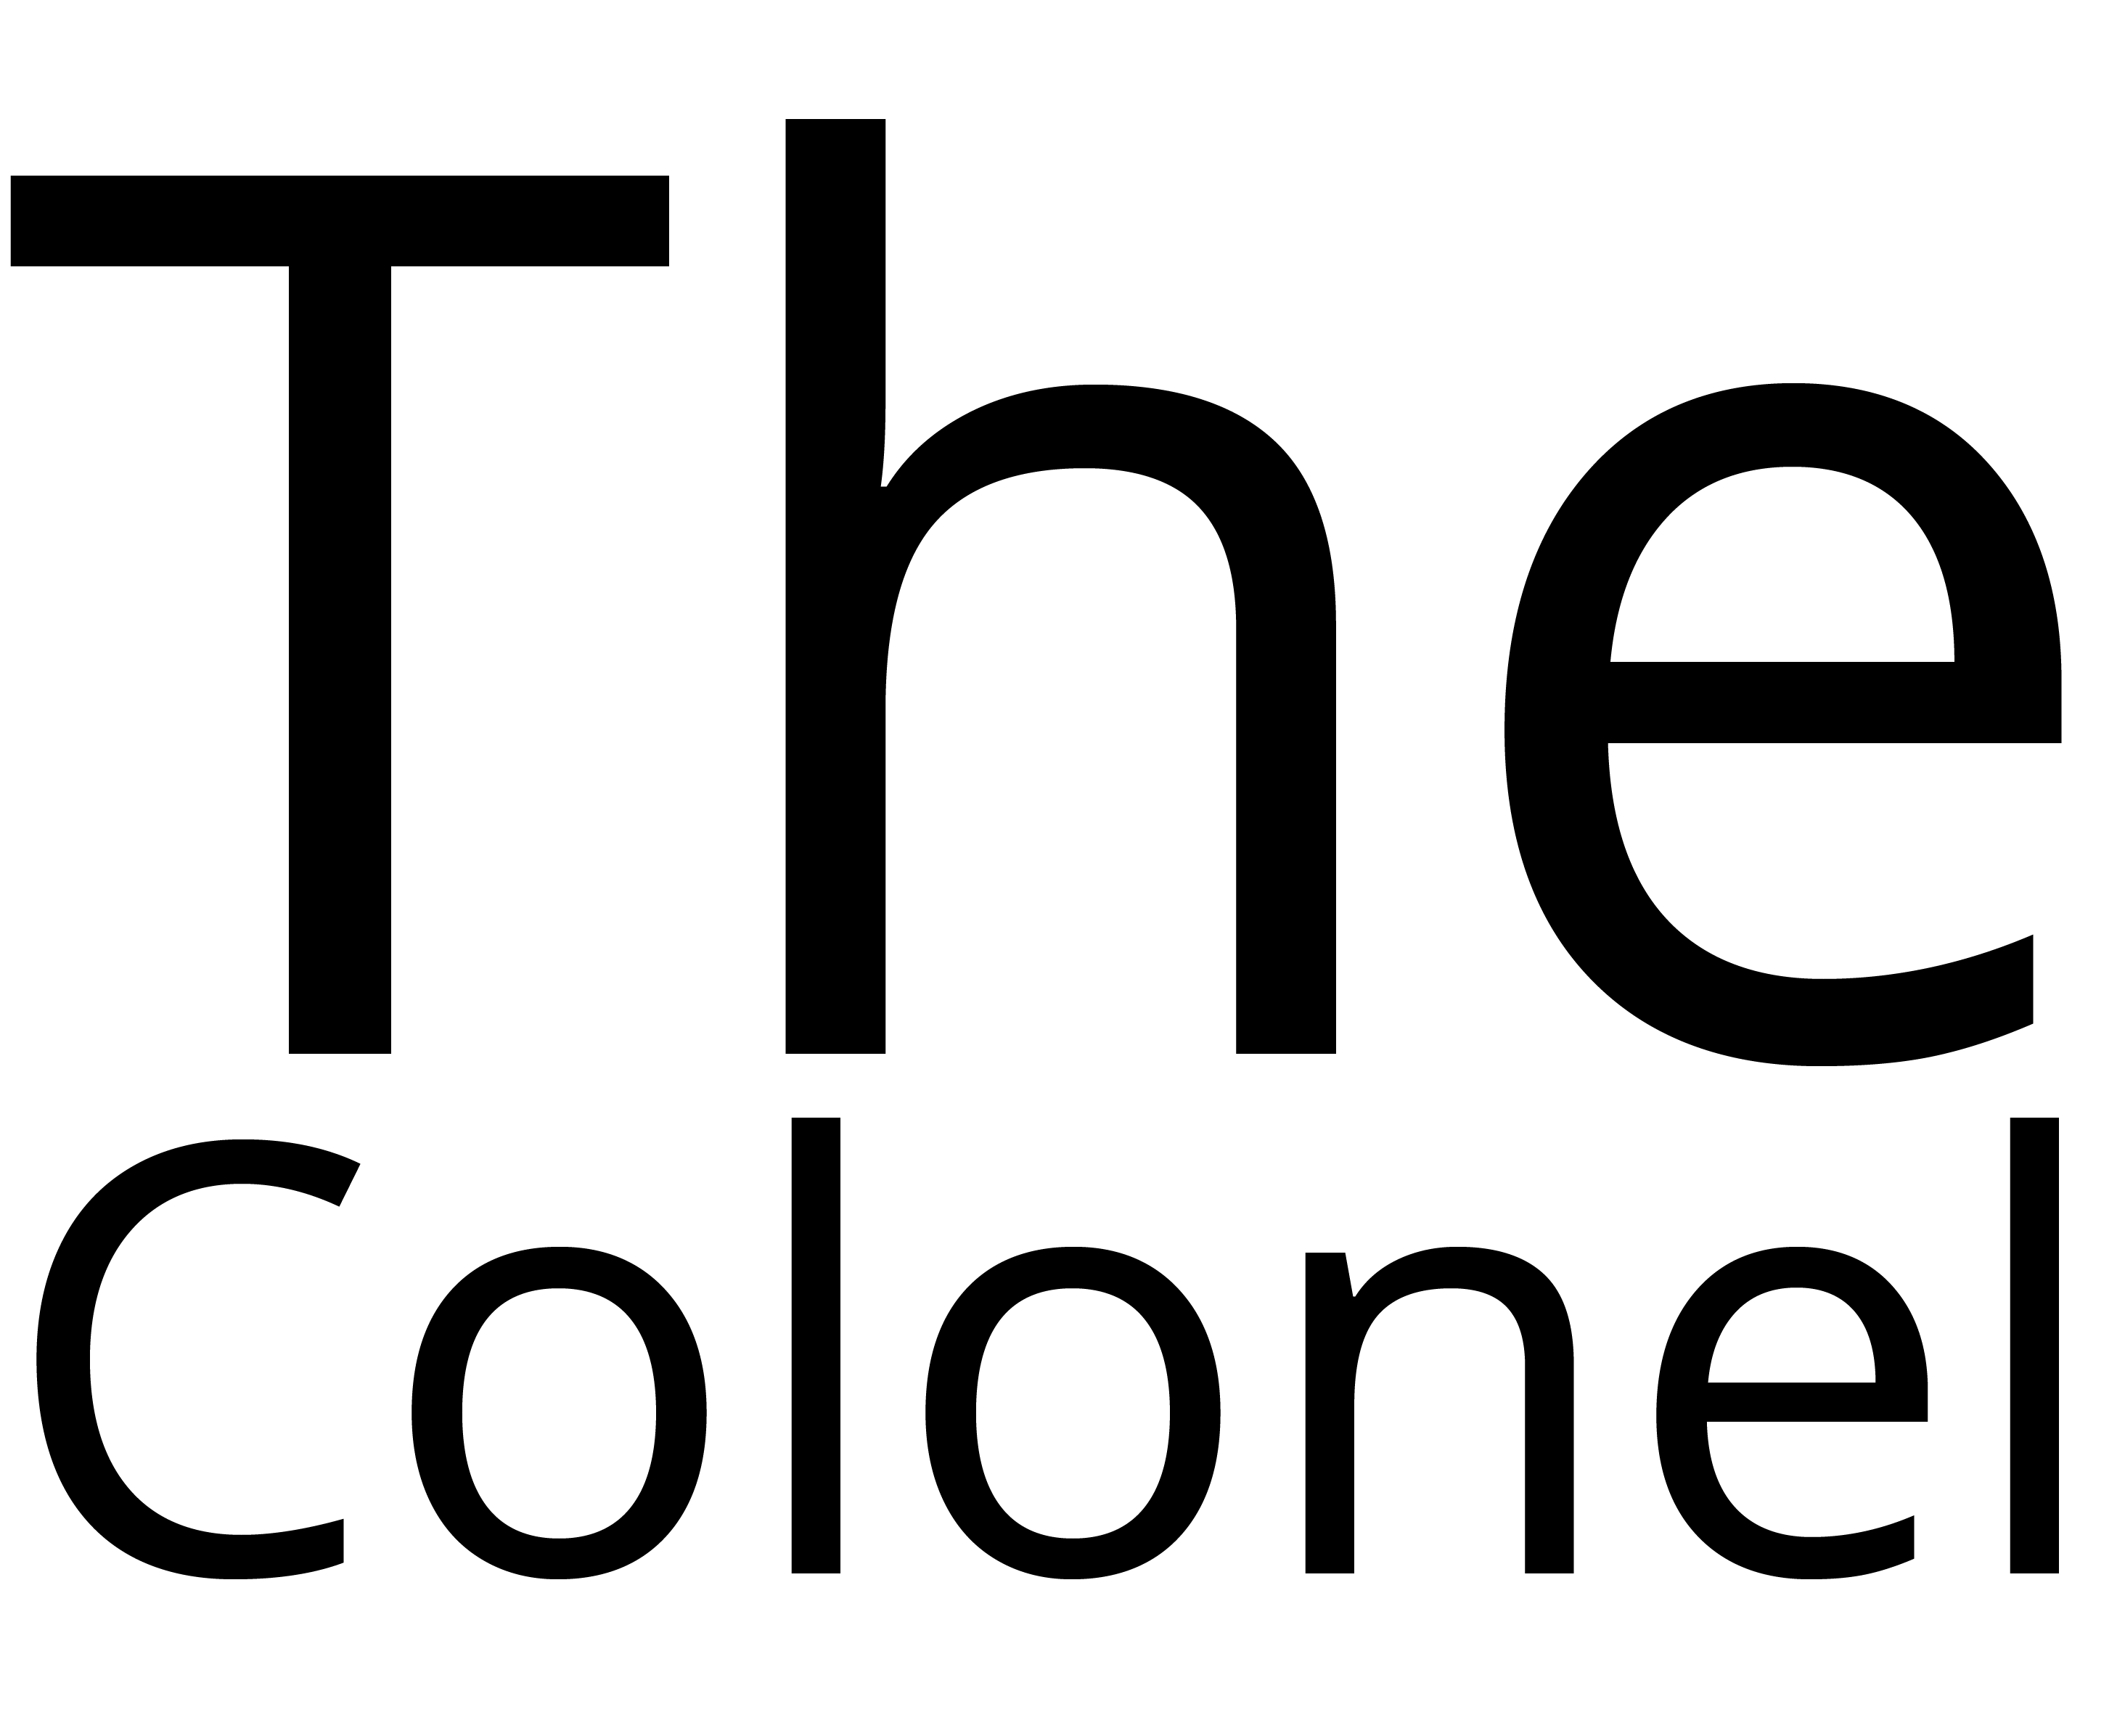 Colonel Logo - The Colonel